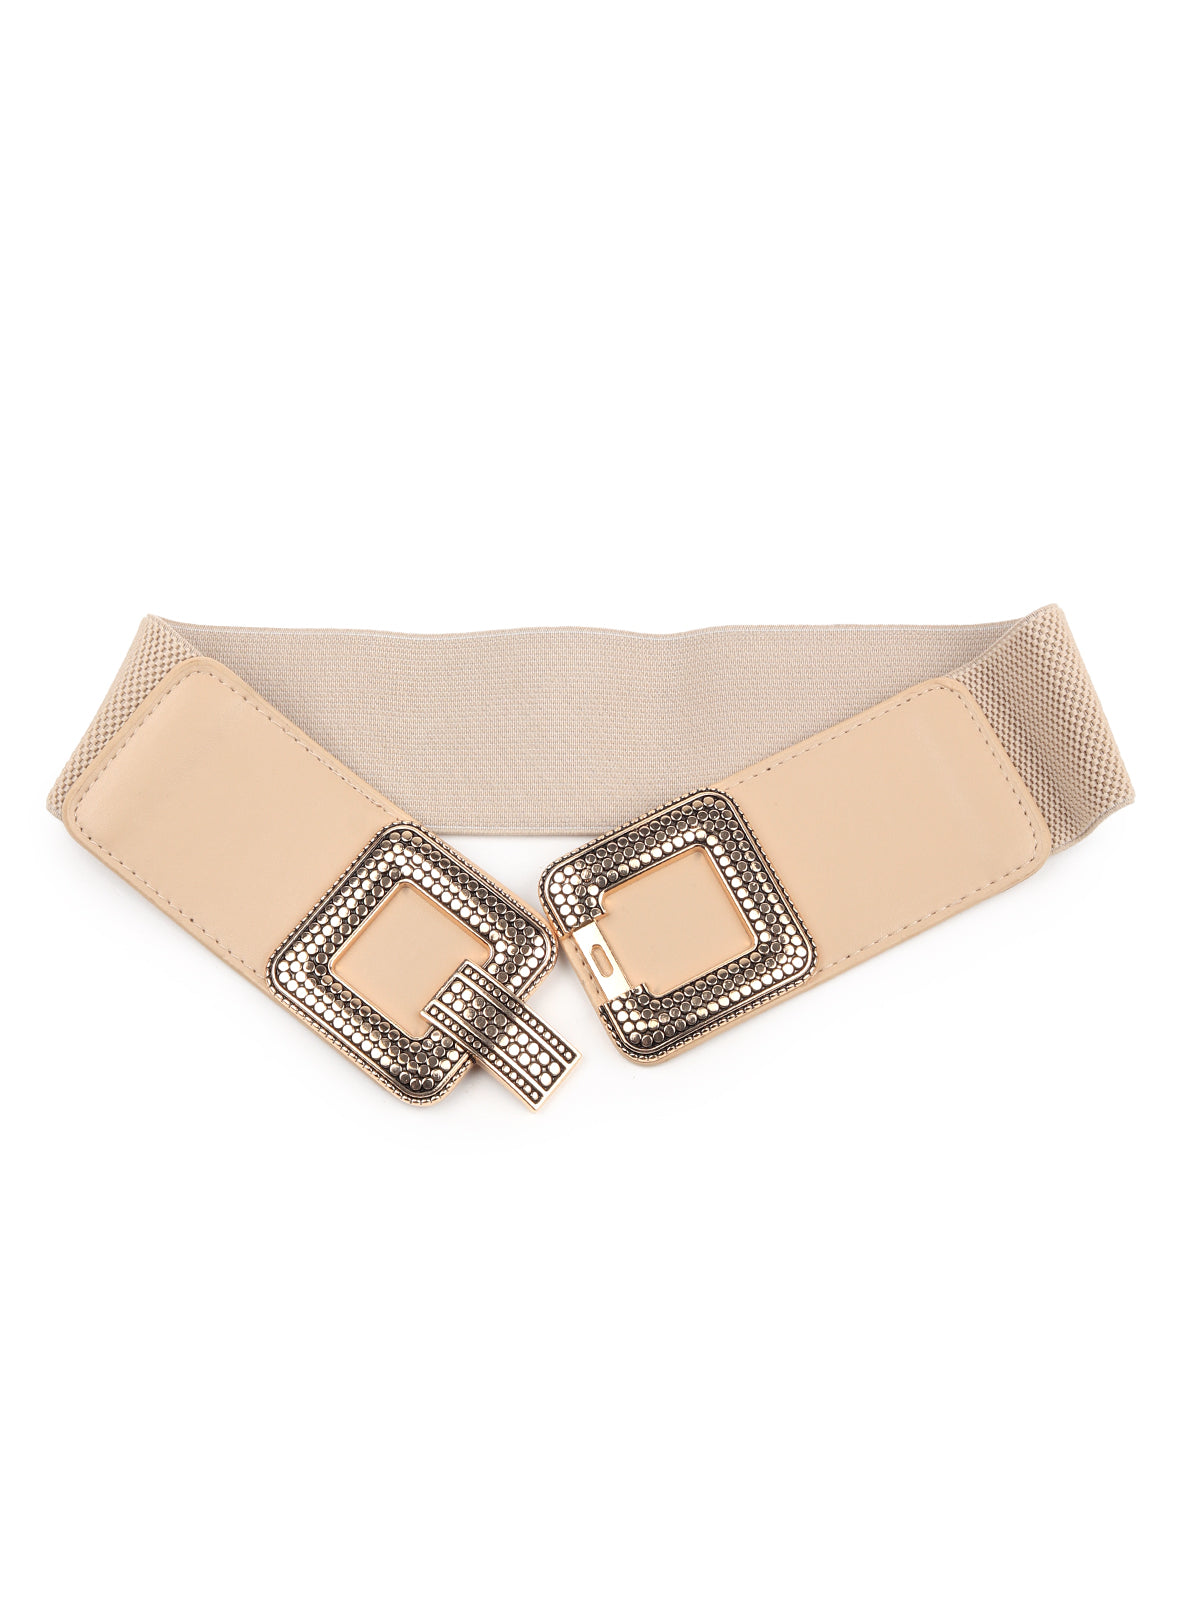 Beige Elastane & Faux Leather Embellished Belt